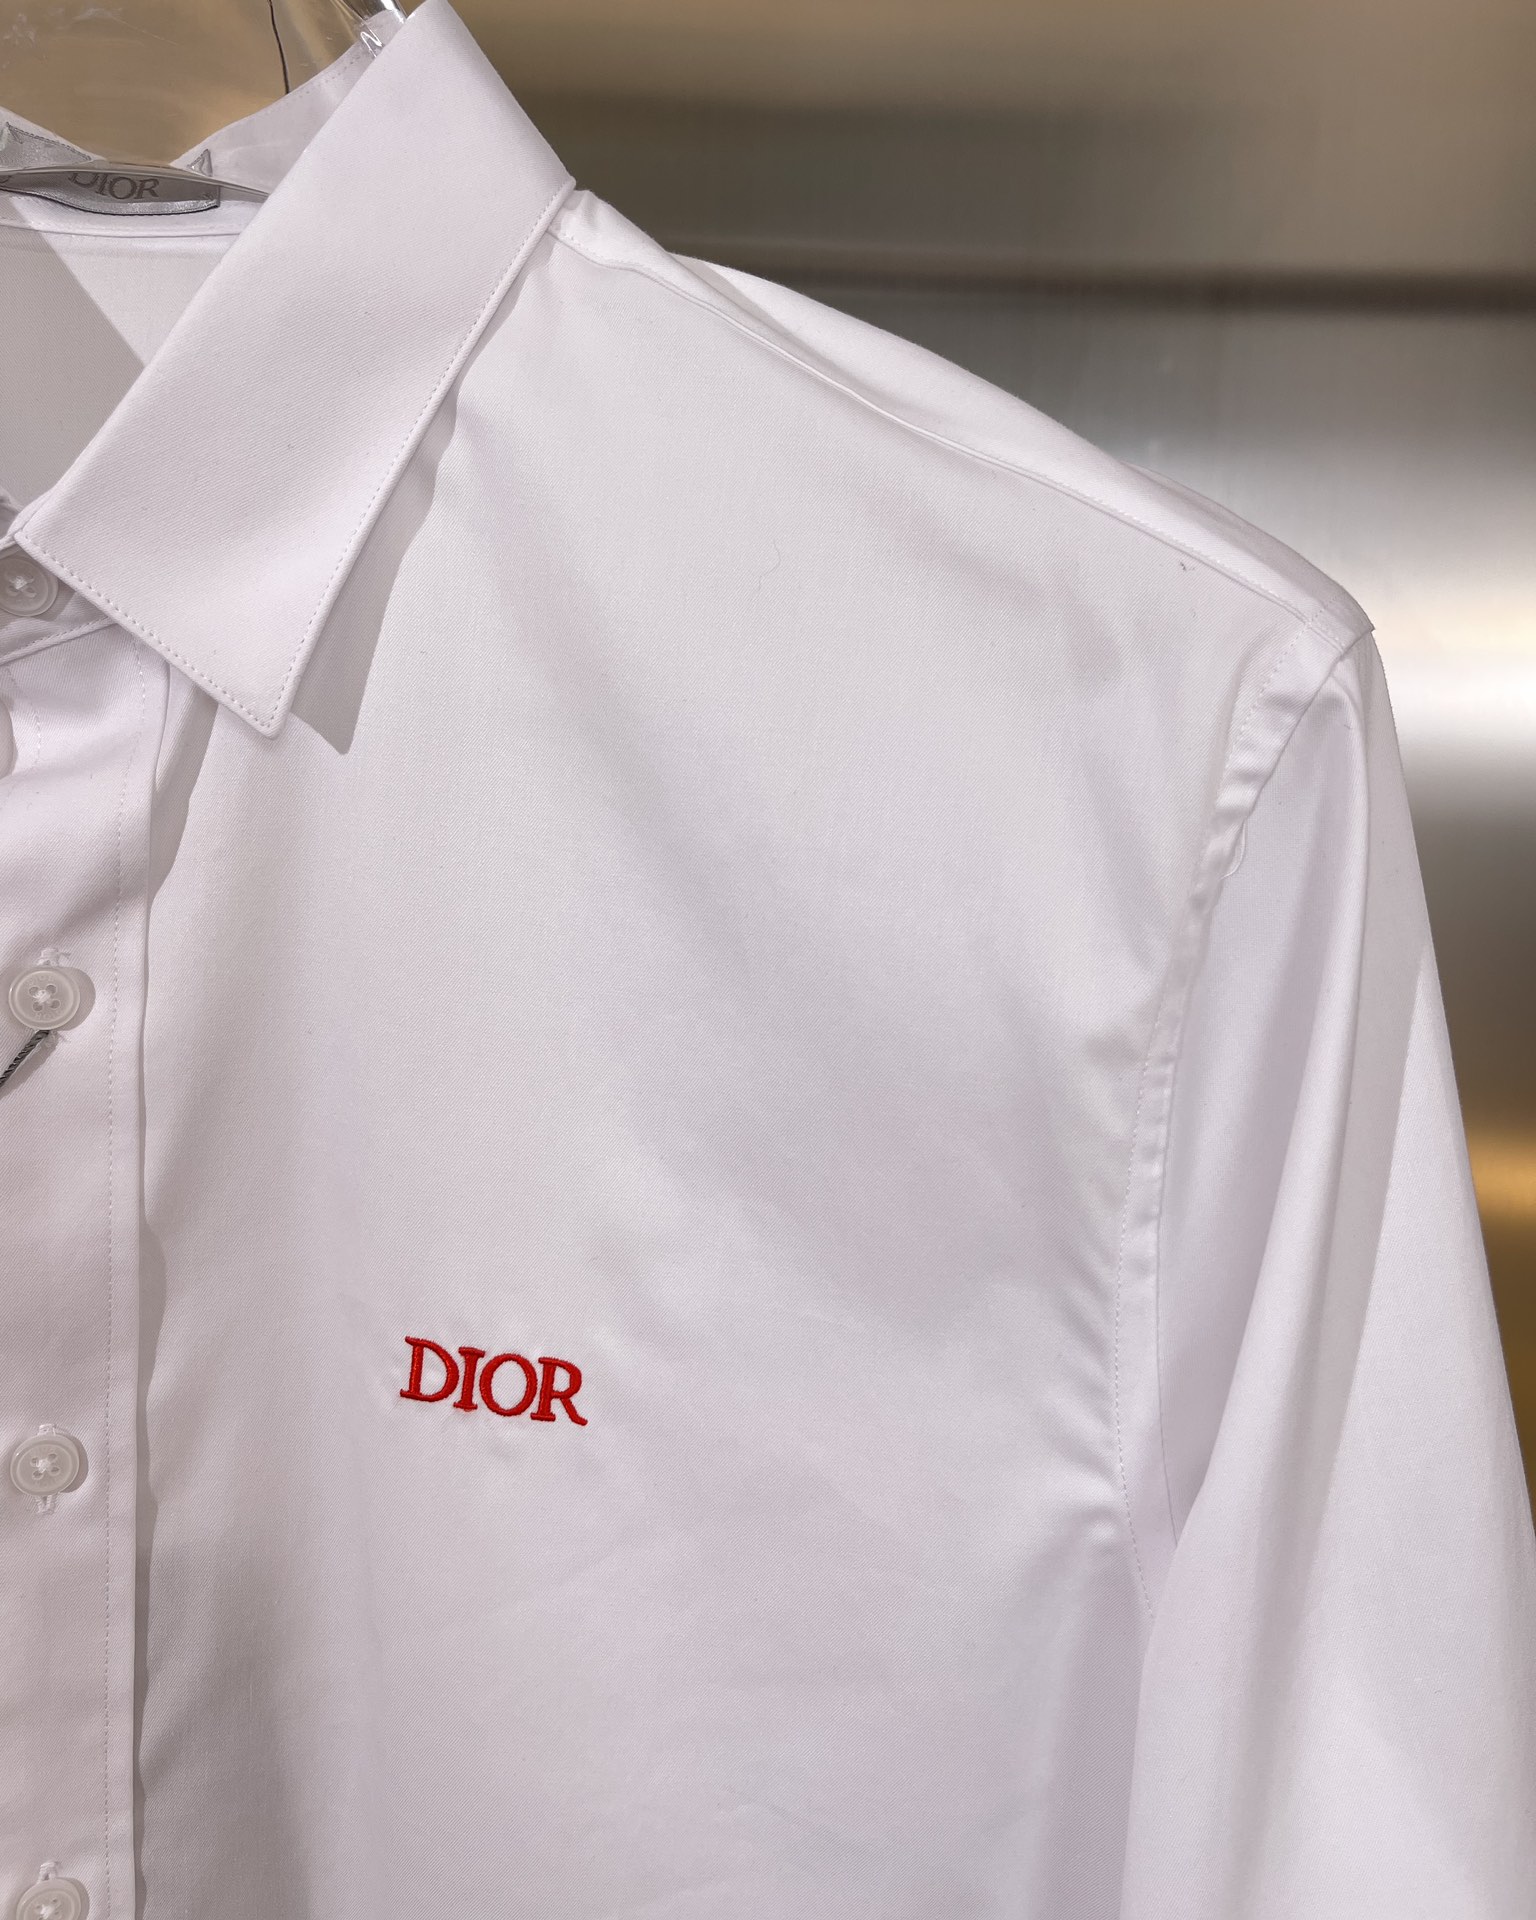 Dior迪奥款式男款长袖弹力府绸衬衫Shirts徽标设计刺绣衬托简约设计和现代格调为数稀少,铸就最为优雅